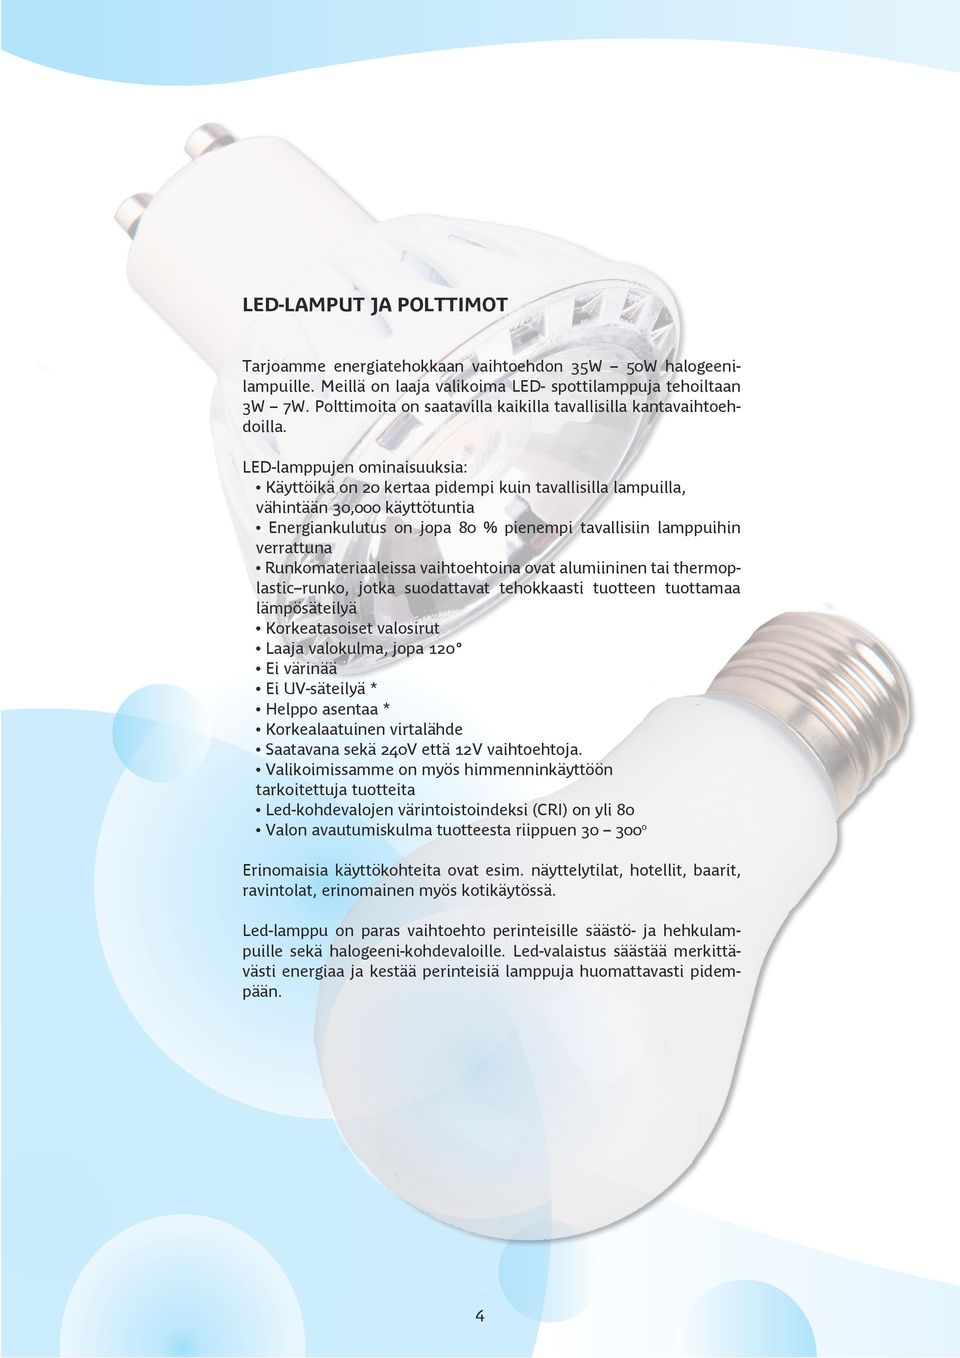 LED-lamppujen ominaisuuksia: Käyttöikä on 20 kertaa pidempi kuin tavallisilla lampuilla, vähintään 30,000 käyttötuntia Energiankulutus on jopa 80 % pienempi tavallisiin lamppuihin verrattuna